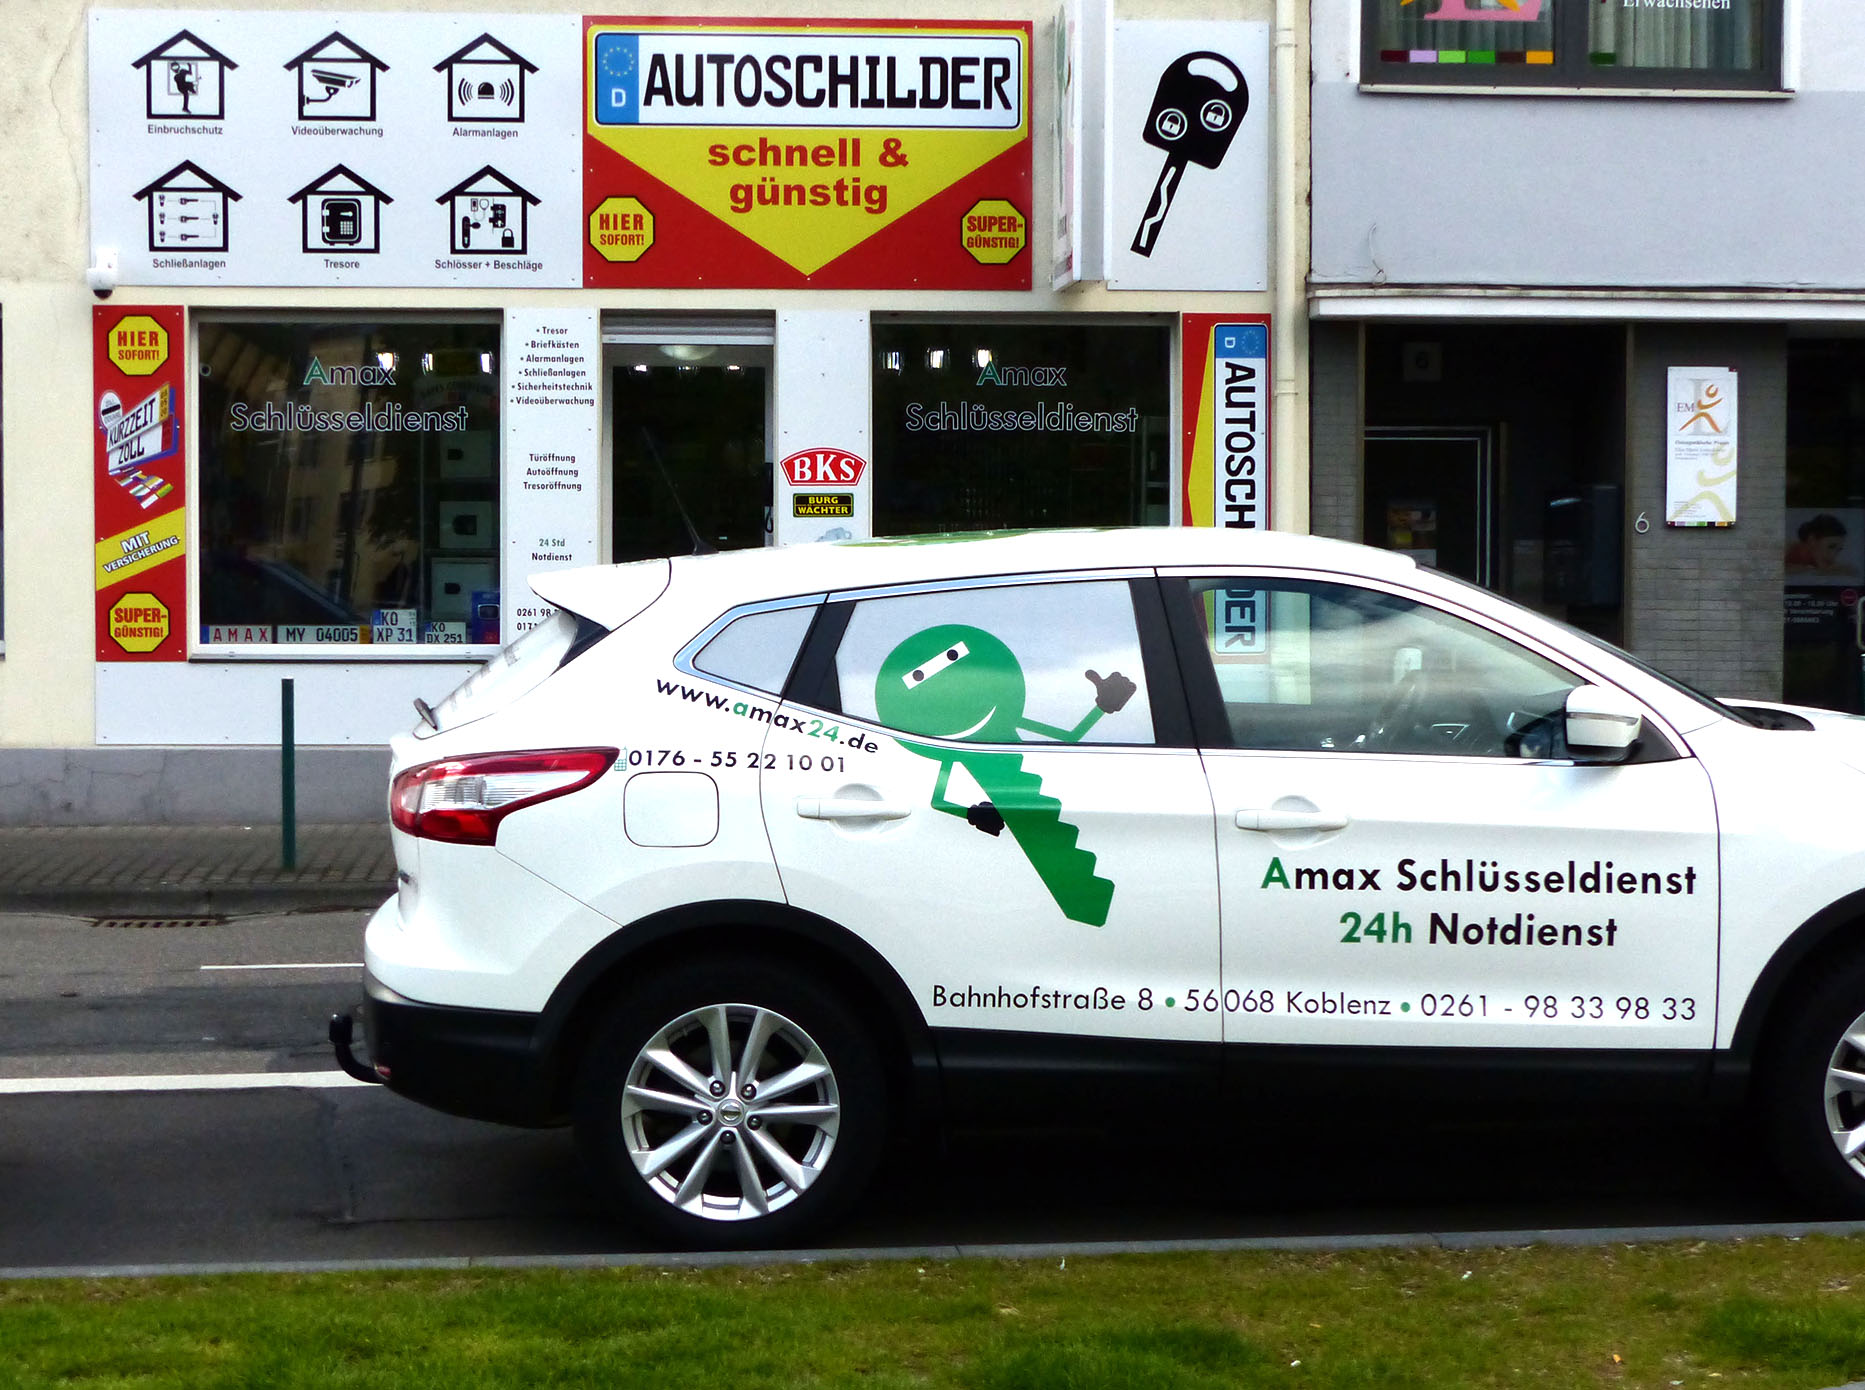 Autoschilder Koblenz